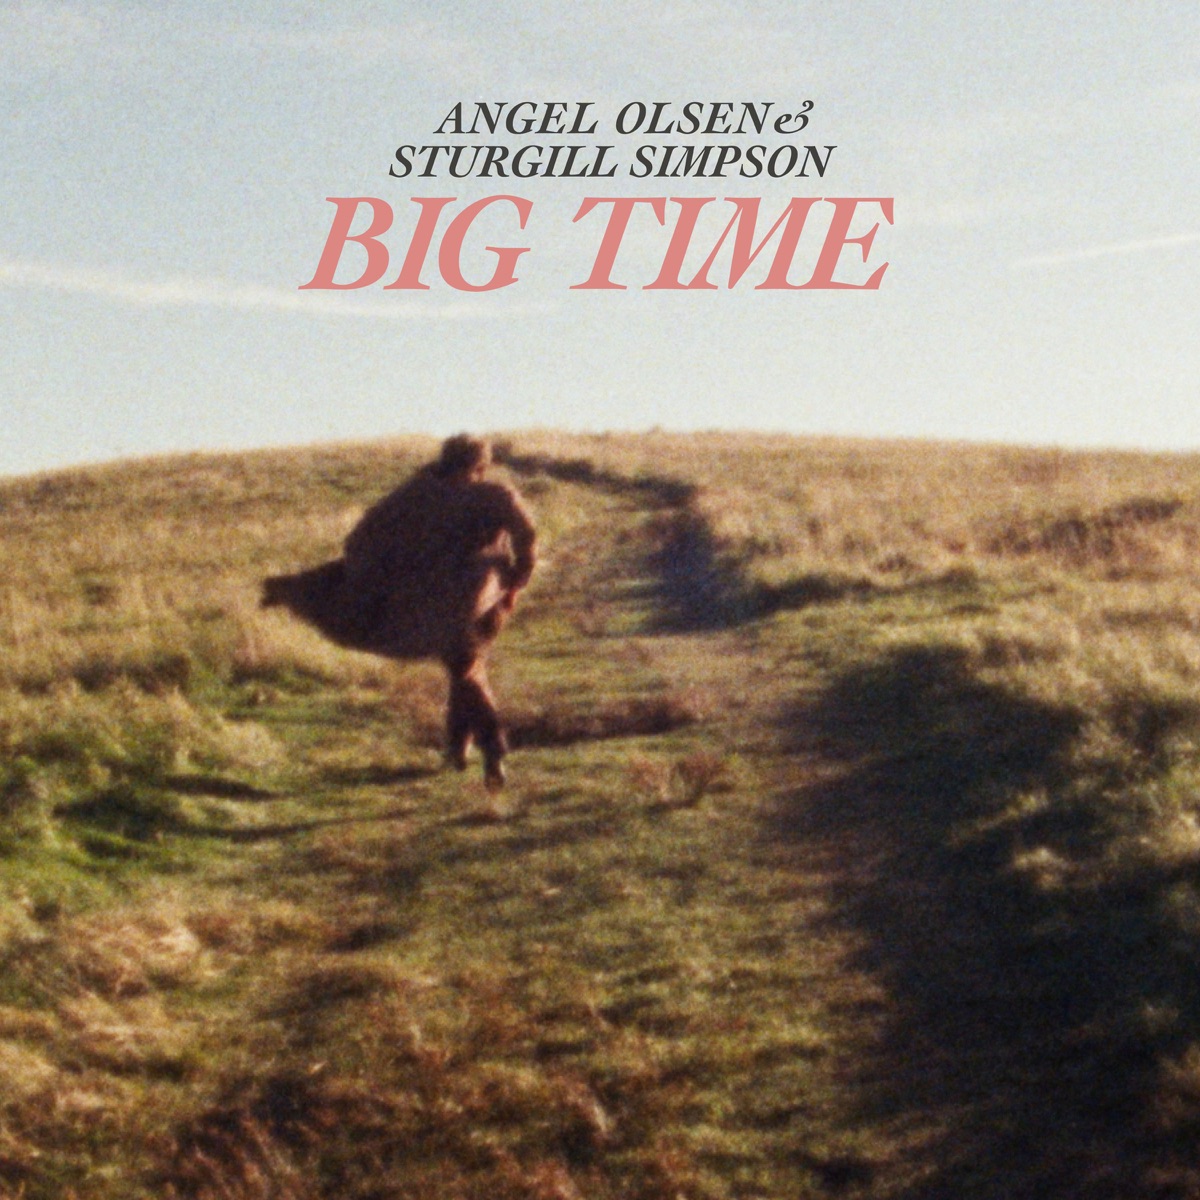 Angel Olsen – Endgame Lyrics